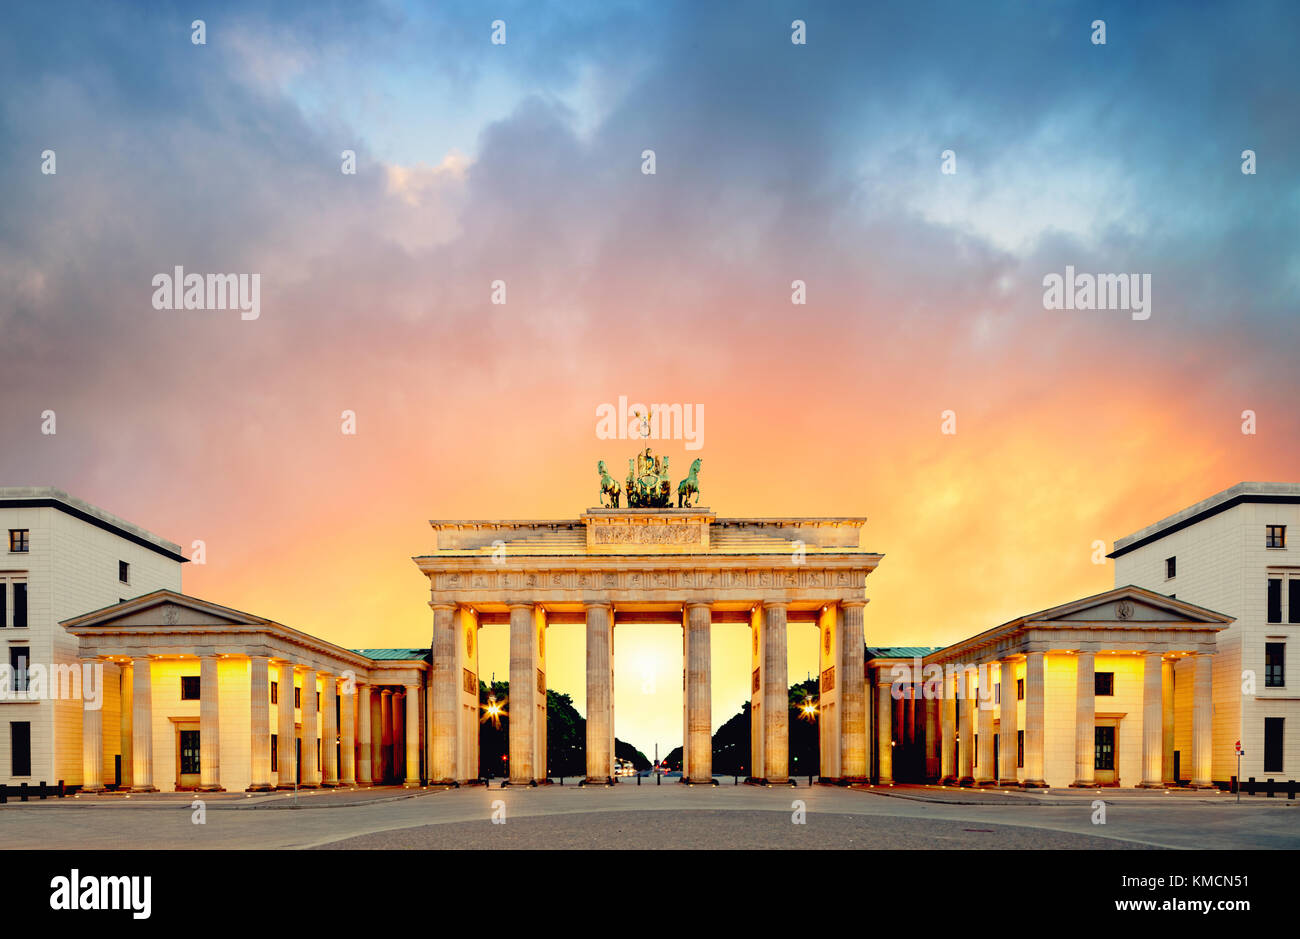 Porte de Brandebourg (Brandenburger Tor) à Berlin, en Allemagne, sur une image panoramique, coucher du soleil Banque D'Images